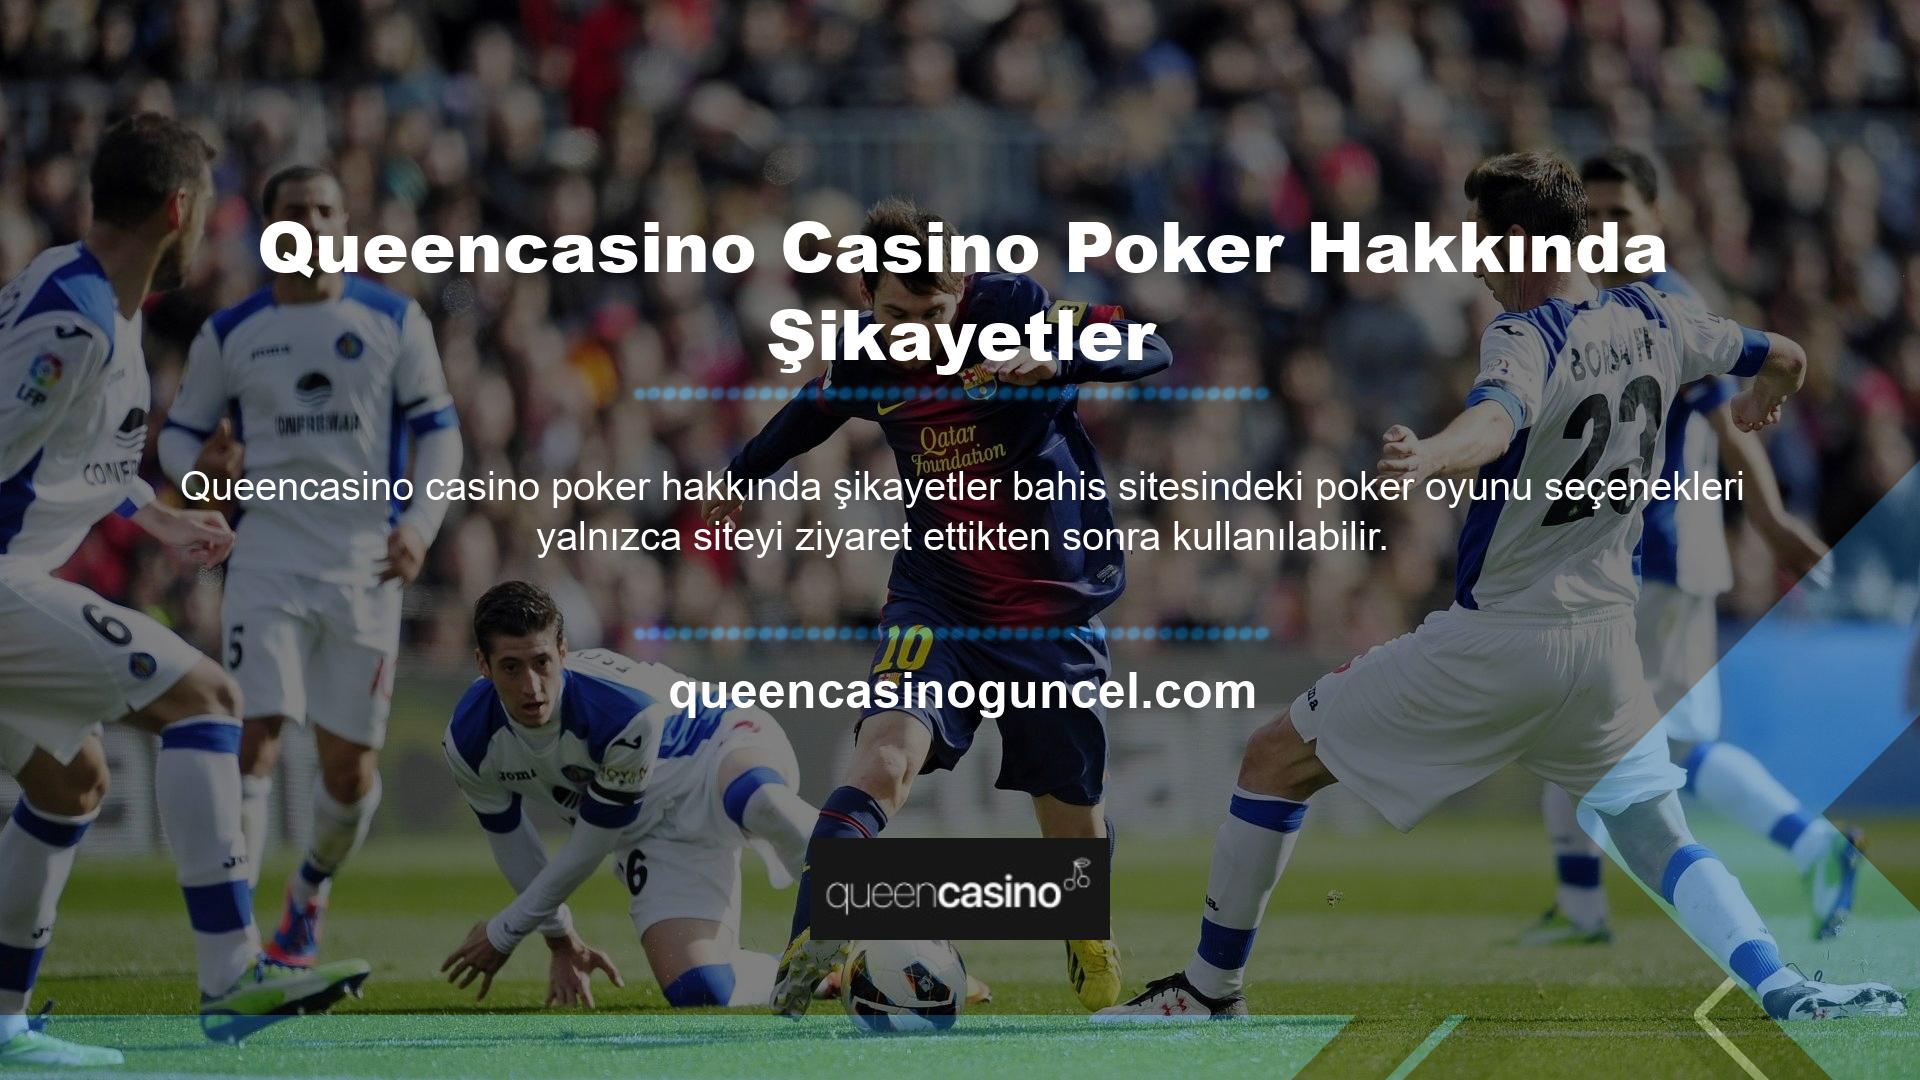 Queencasino Casino Poker'in hiçbir şikayeti yok